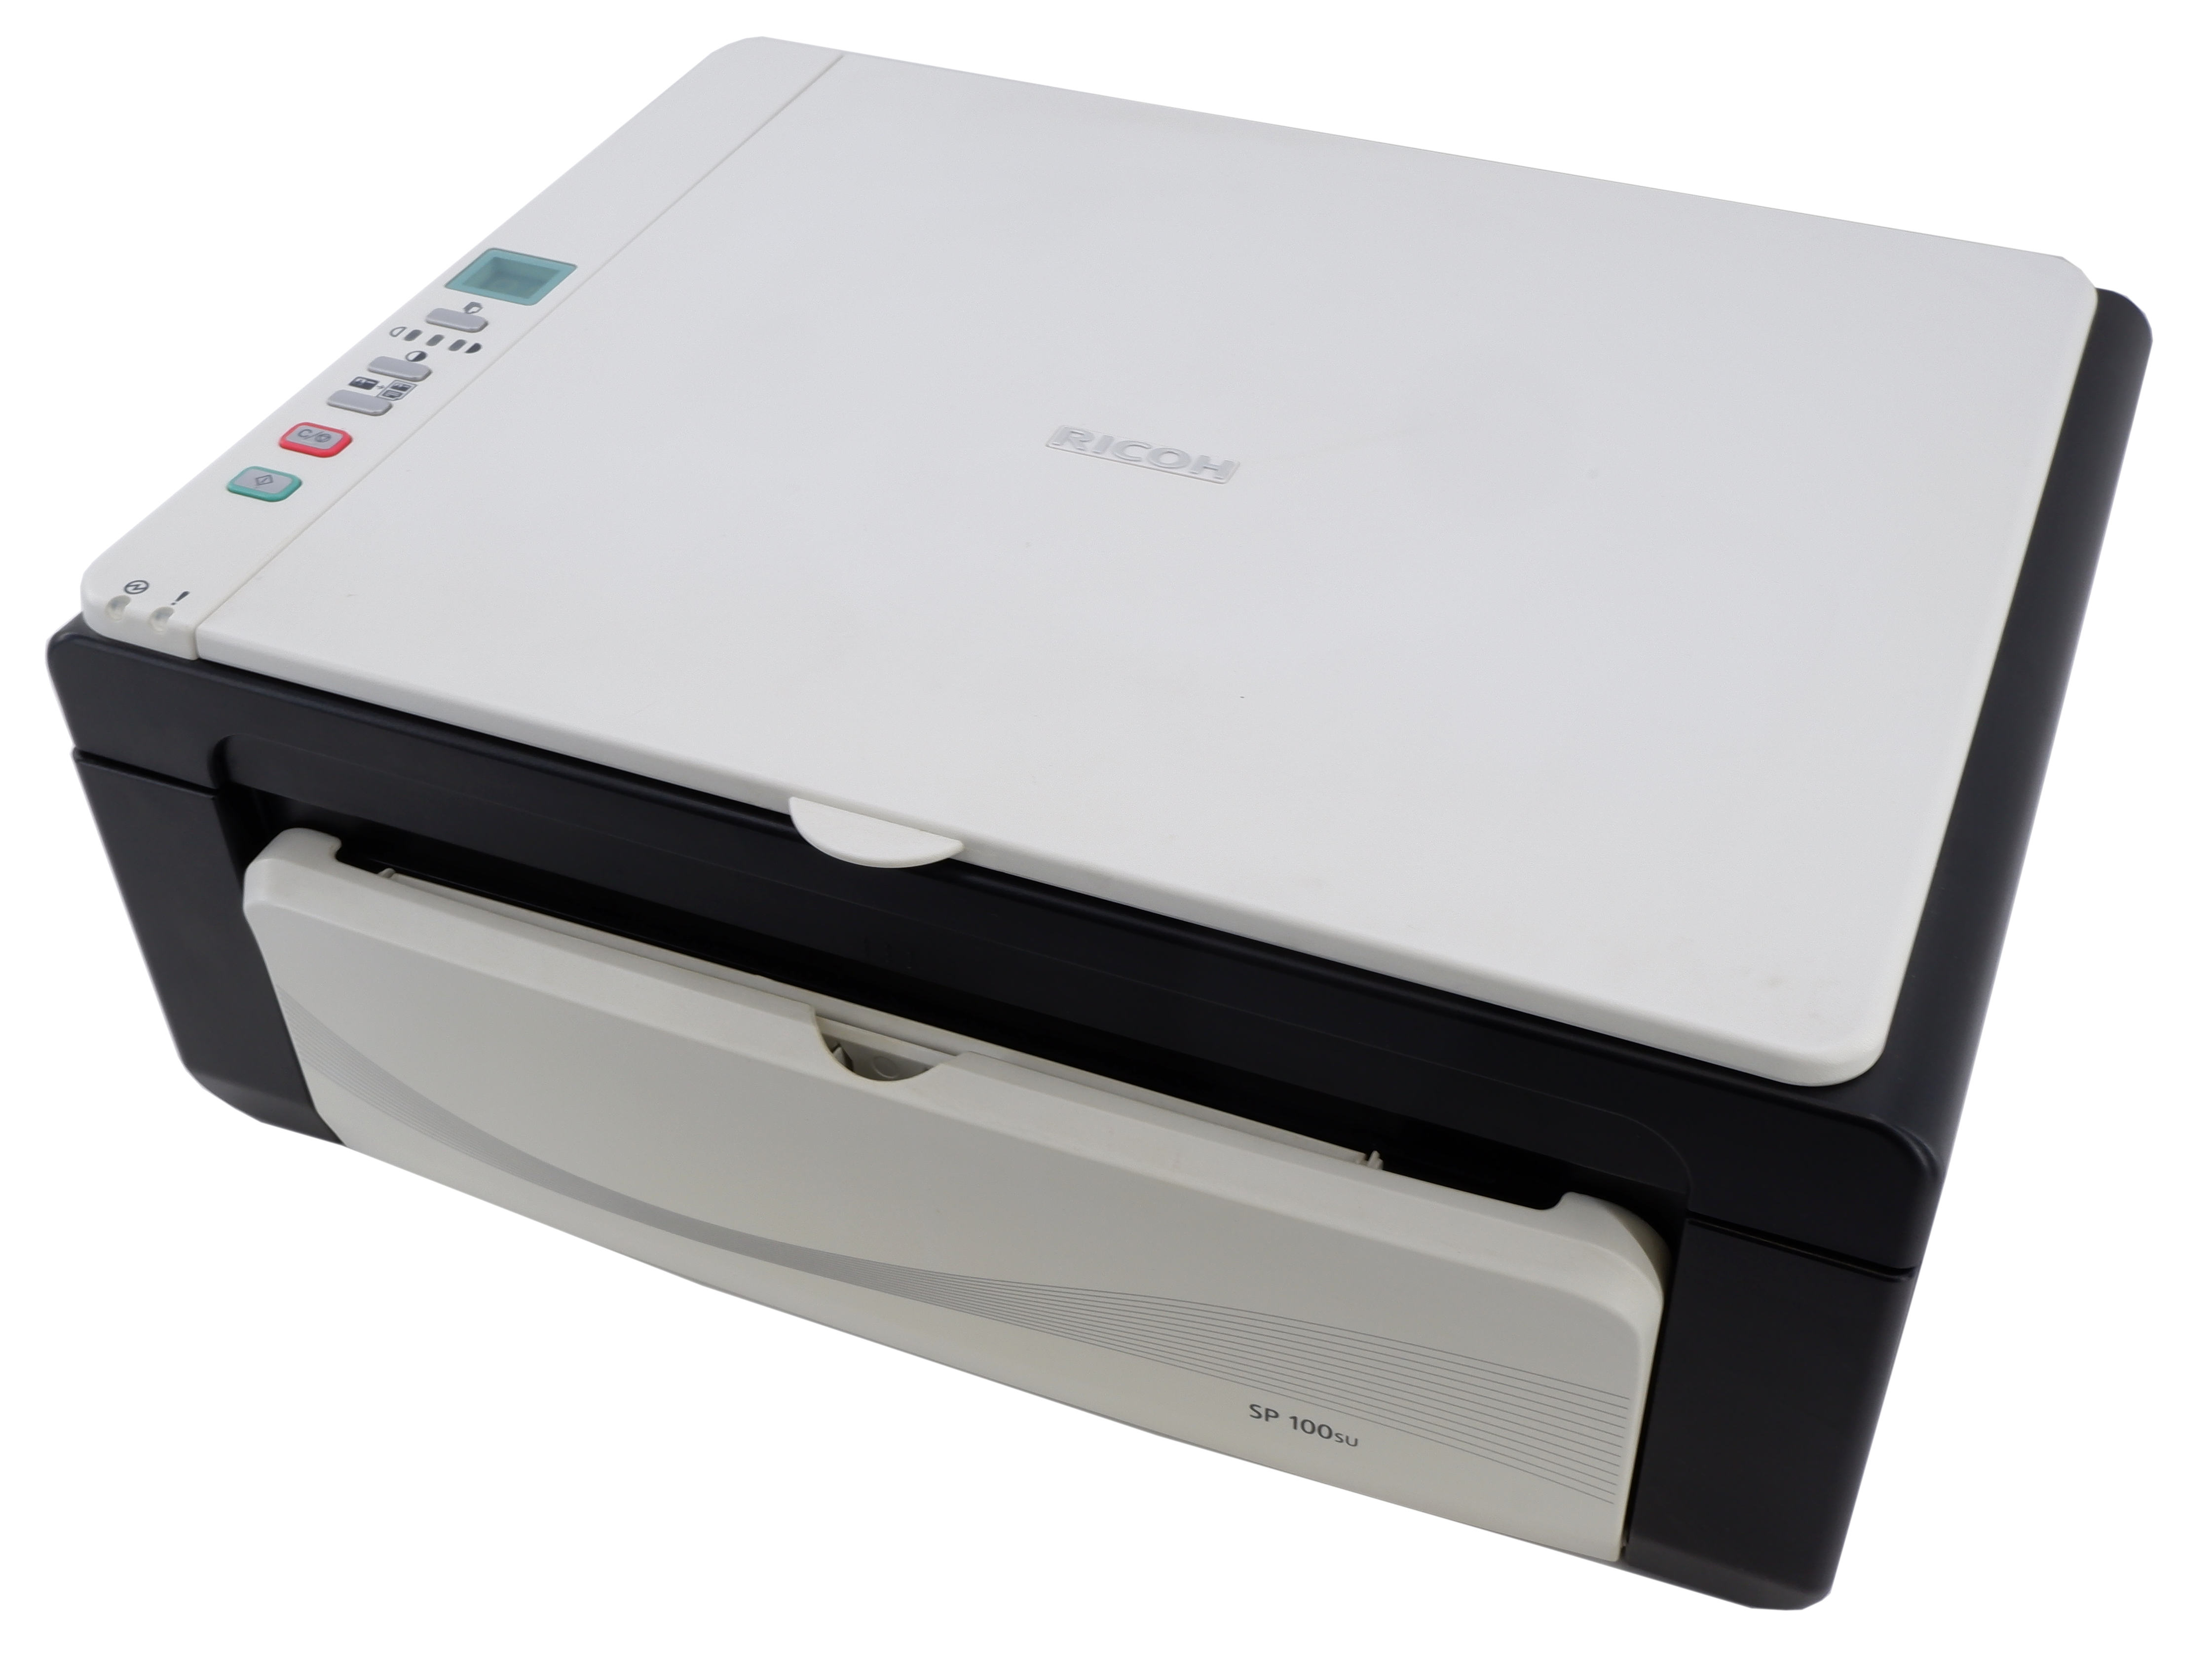 Как установить драйвера на принтер ricoh aficio sp 100su притом, что в ноутбуке нет cd rom?